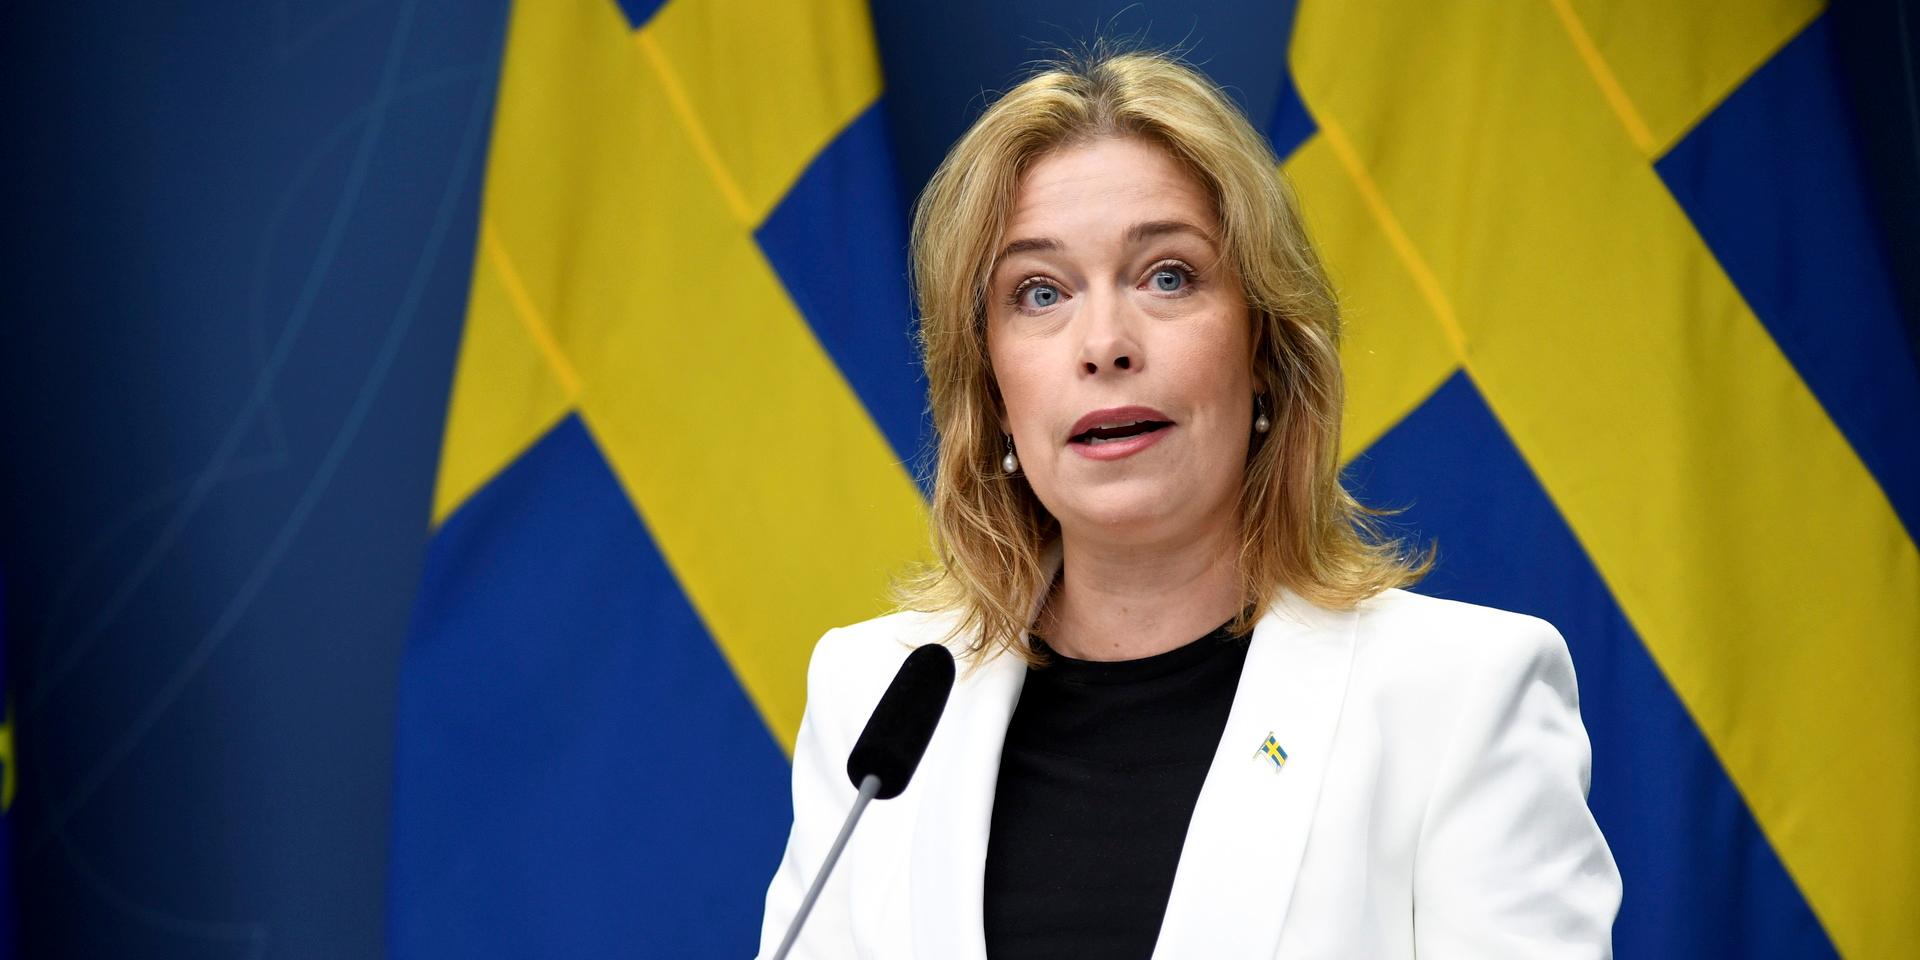 Klimat- och miljöminister Annika Strandhäll (S).